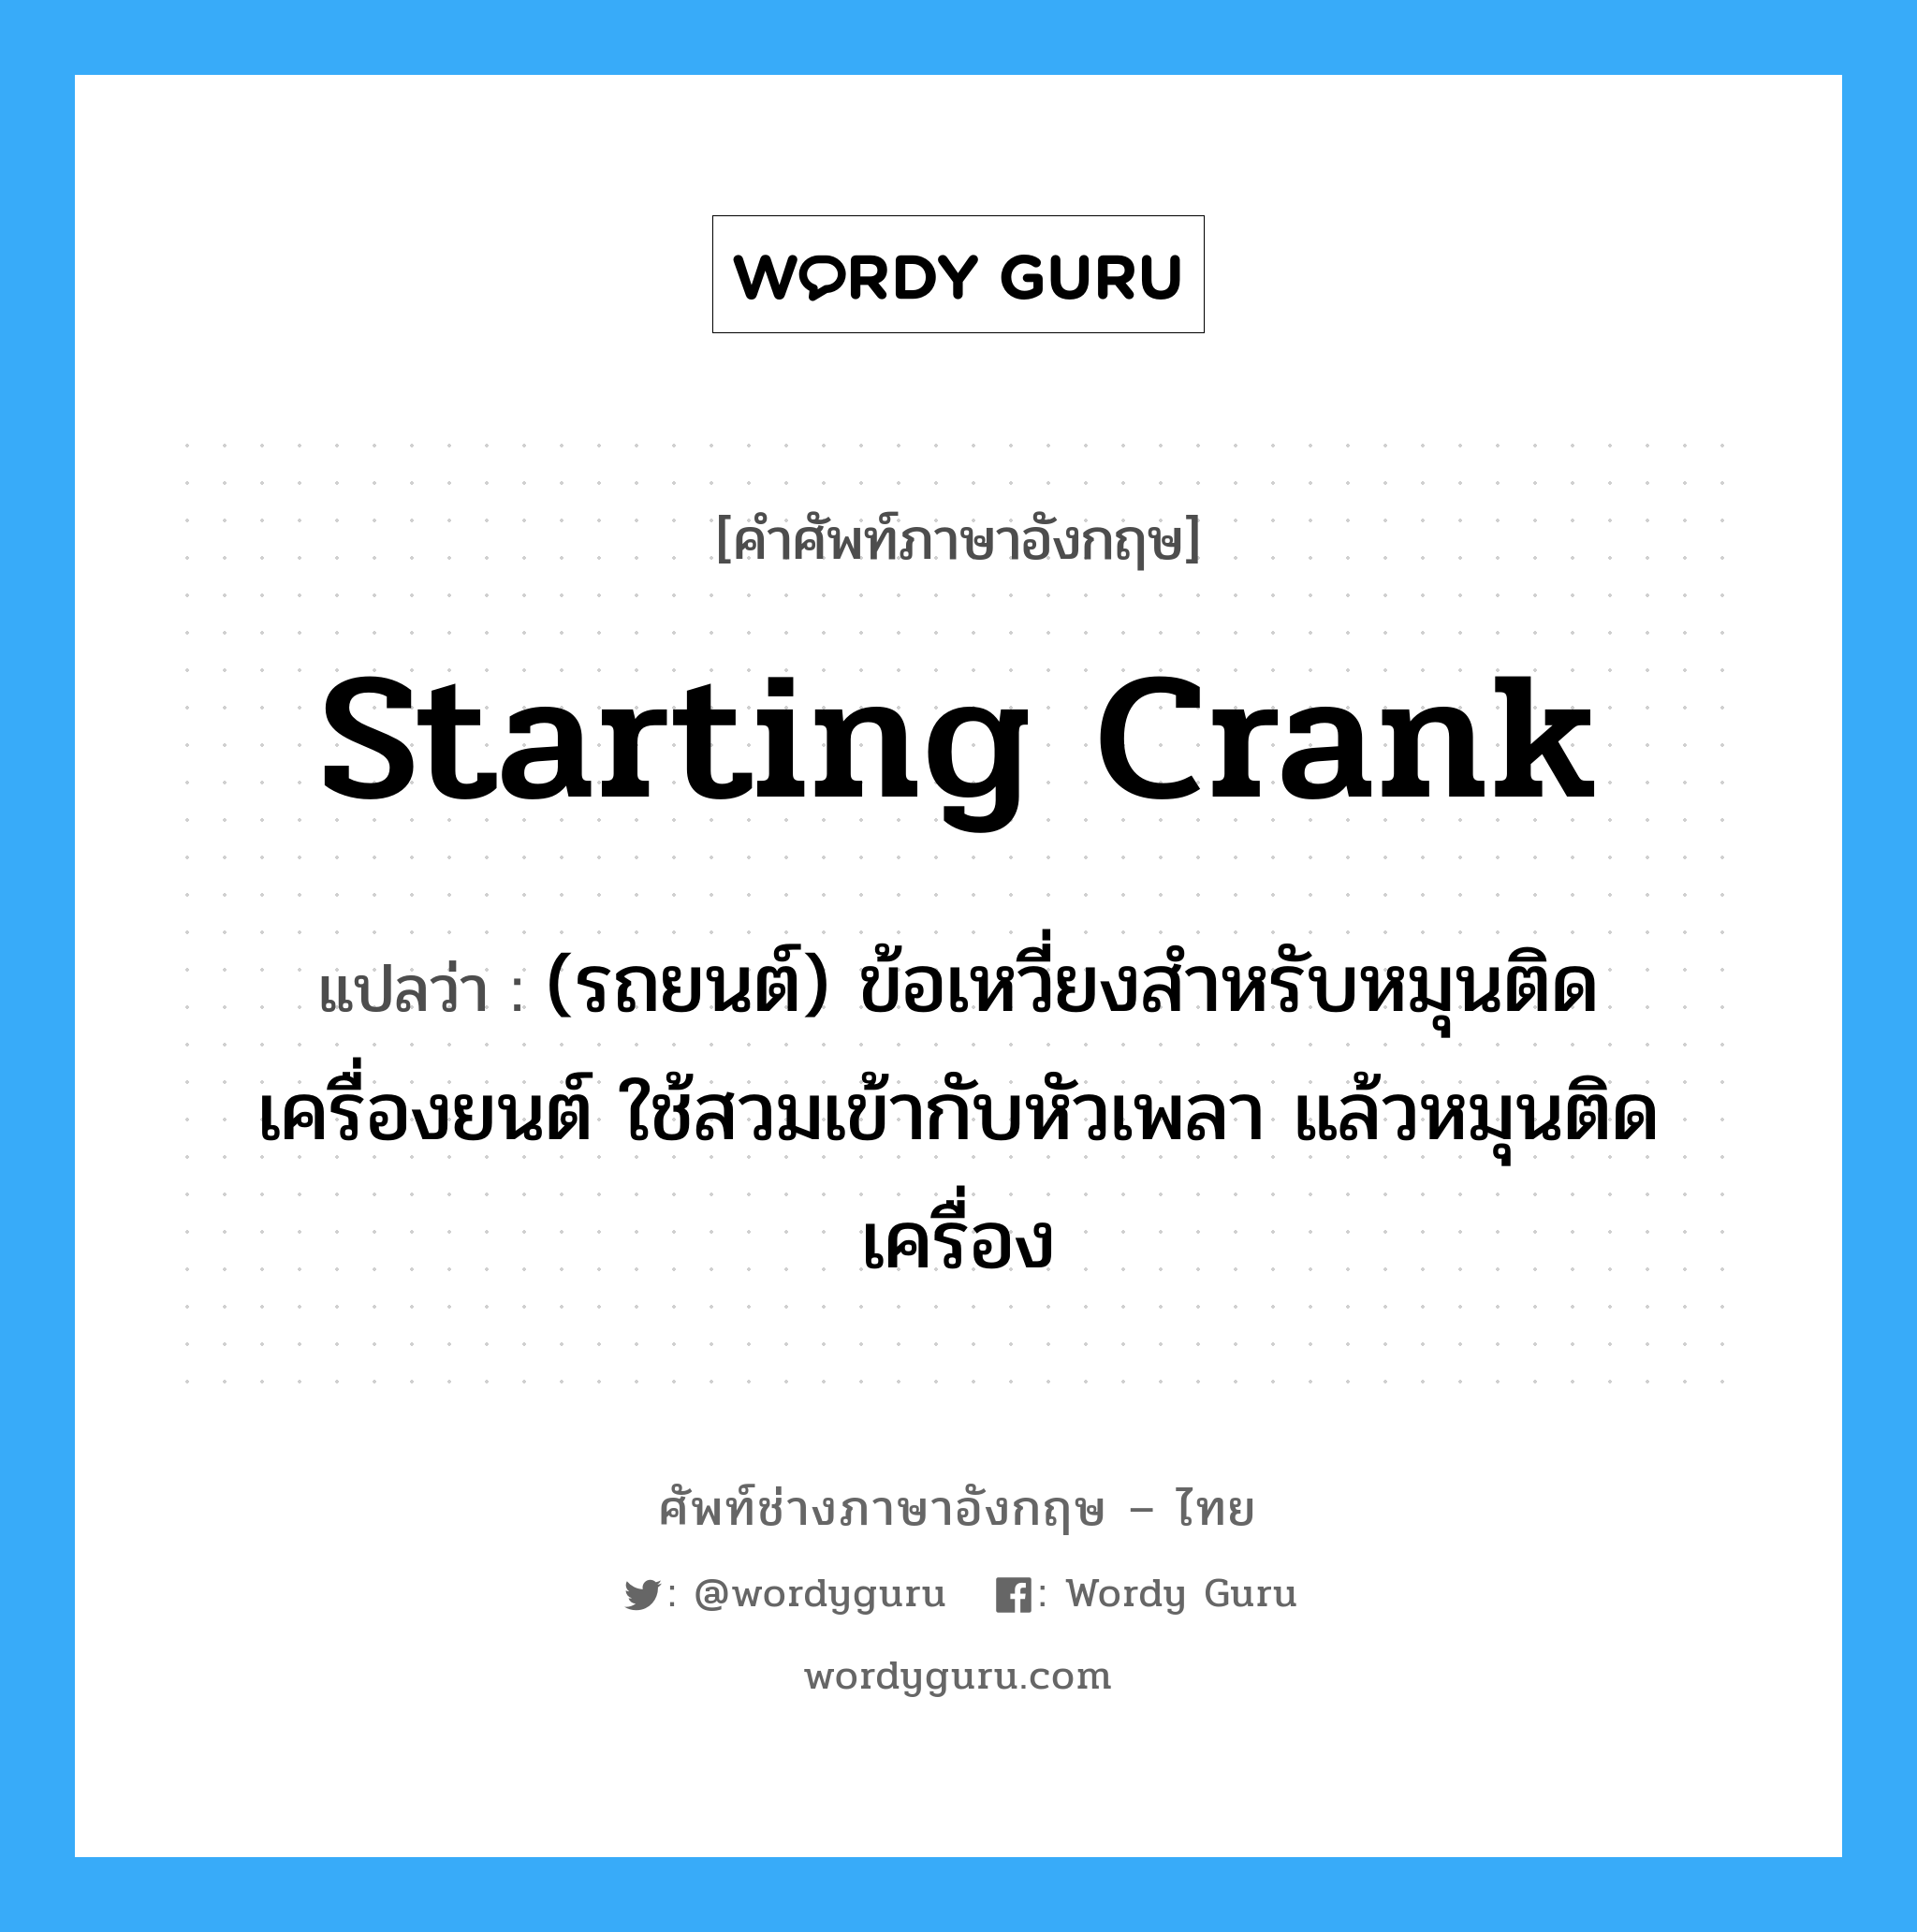 starting crank แปลว่า?, คำศัพท์ช่างภาษาอังกฤษ - ไทย starting crank คำศัพท์ภาษาอังกฤษ starting crank แปลว่า (รถยนต์) ข้อเหวี่ยงสำหรับหมุนติดเครื่องยนต์ ใช้สวมเข้ากับหัวเพลา แล้วหมุนติดเครื่อง